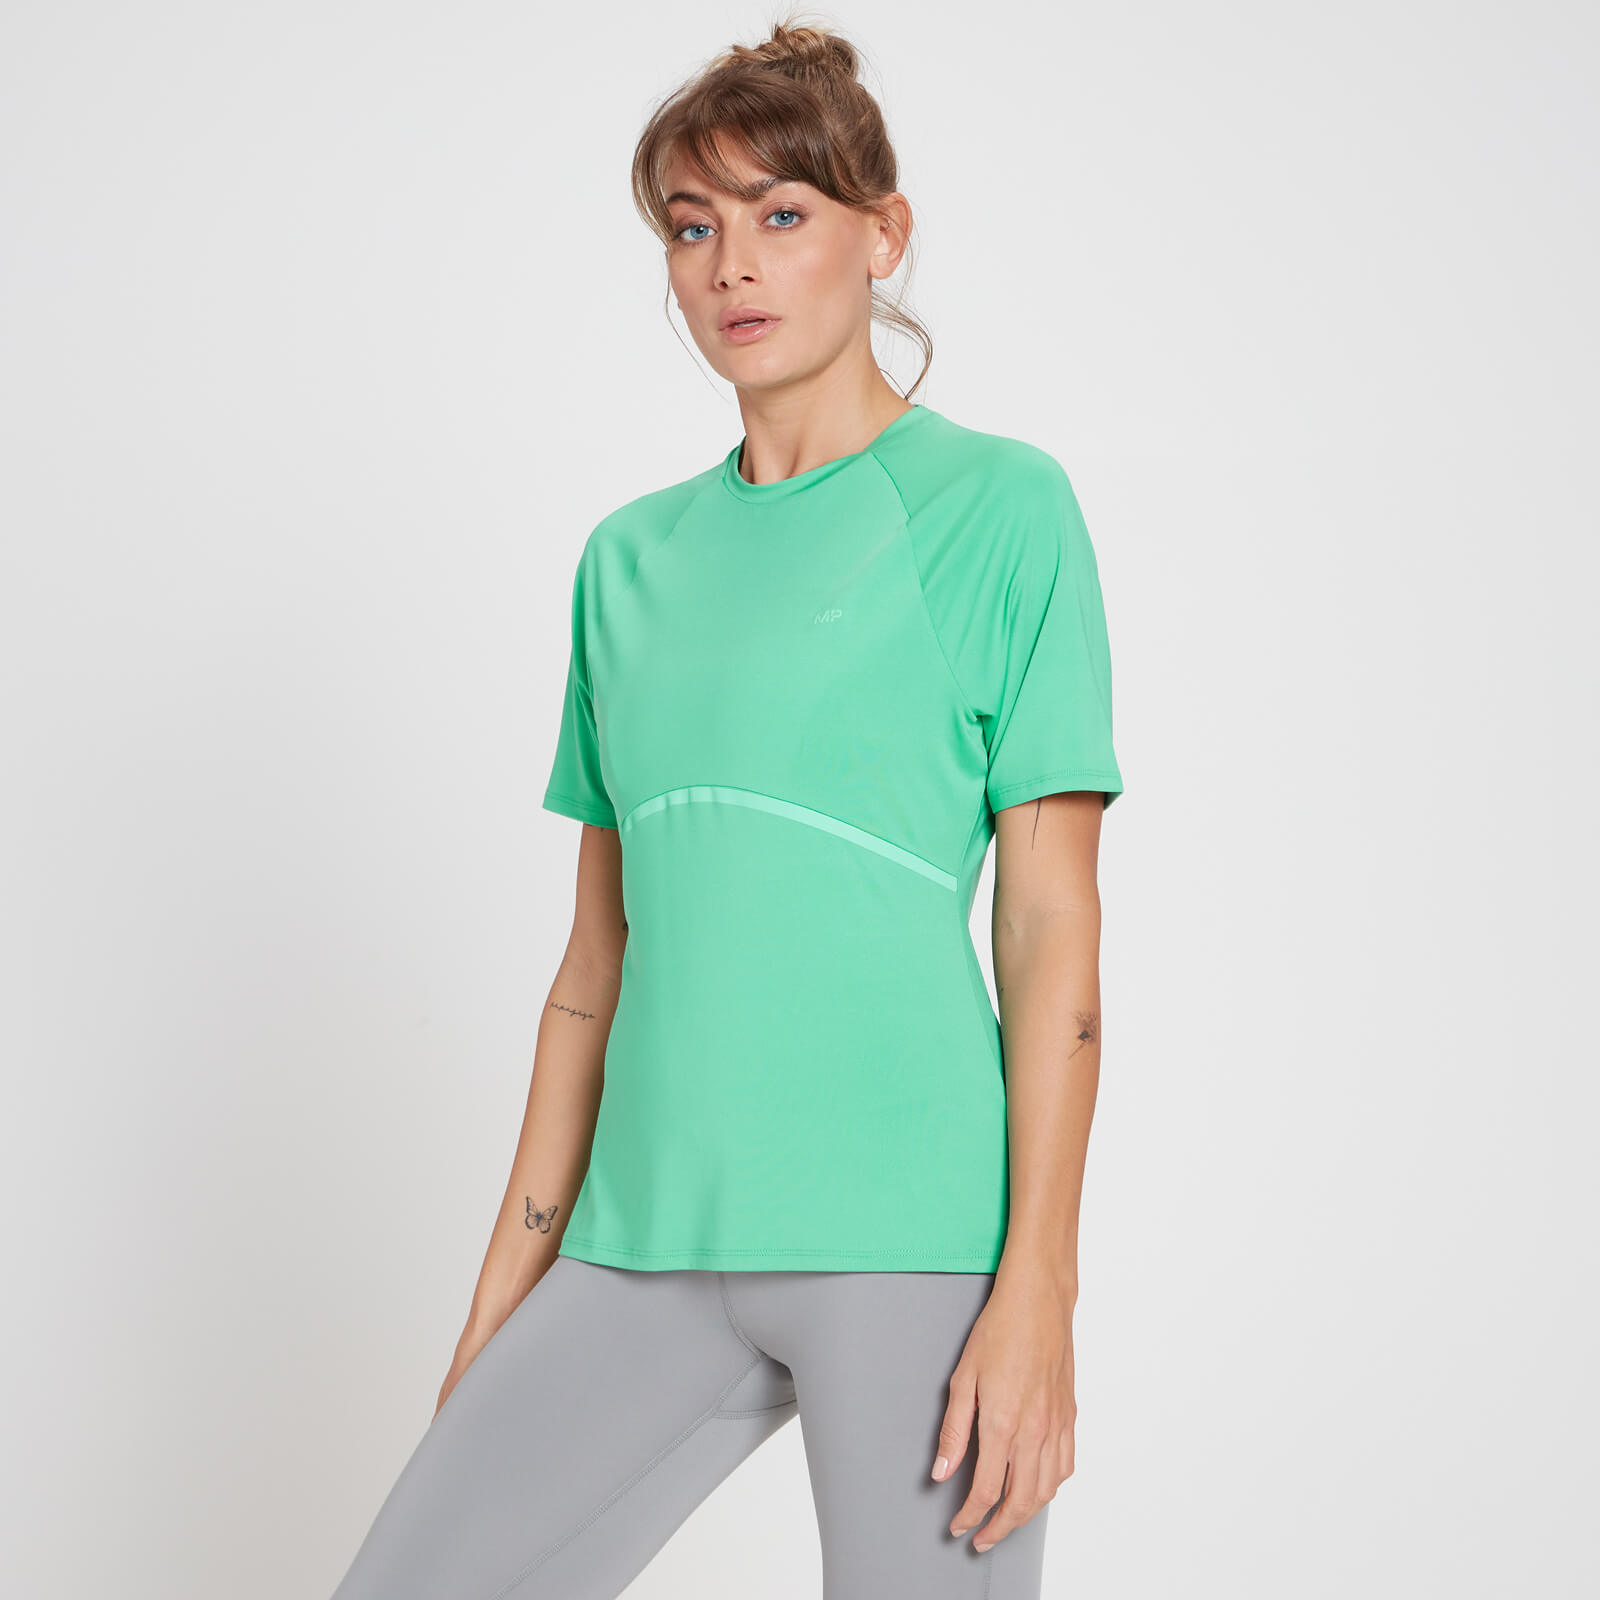 T-shirt réfléchissant MP Velocity Ultra pour femmes – Vert glacé - S